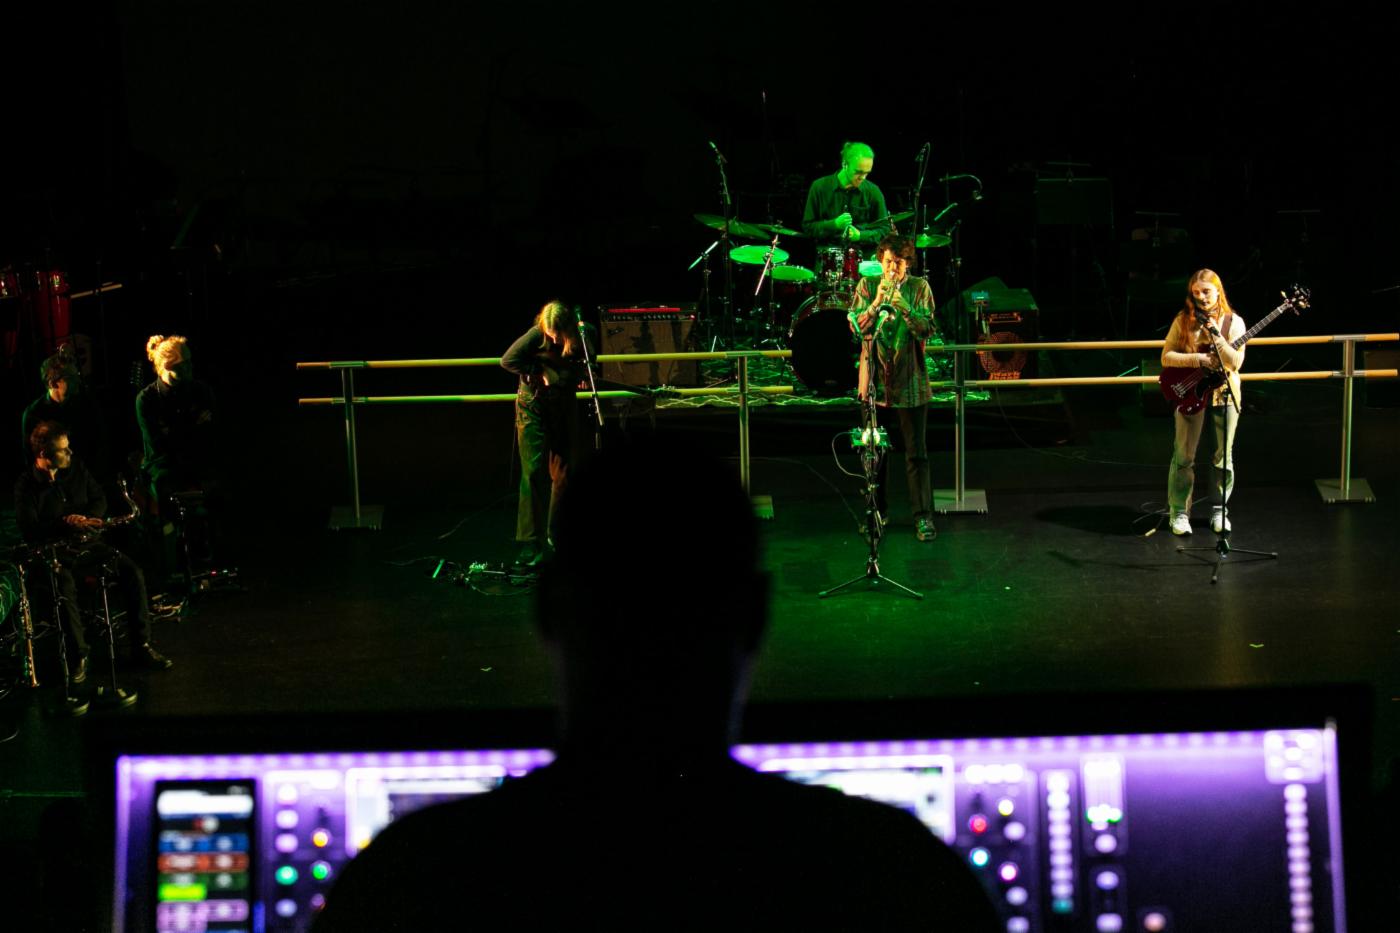 Bildet viser et band som spiller på en scene, i forgrunnen ser du konturene av en tekniker foran en skjerm med ryggen til